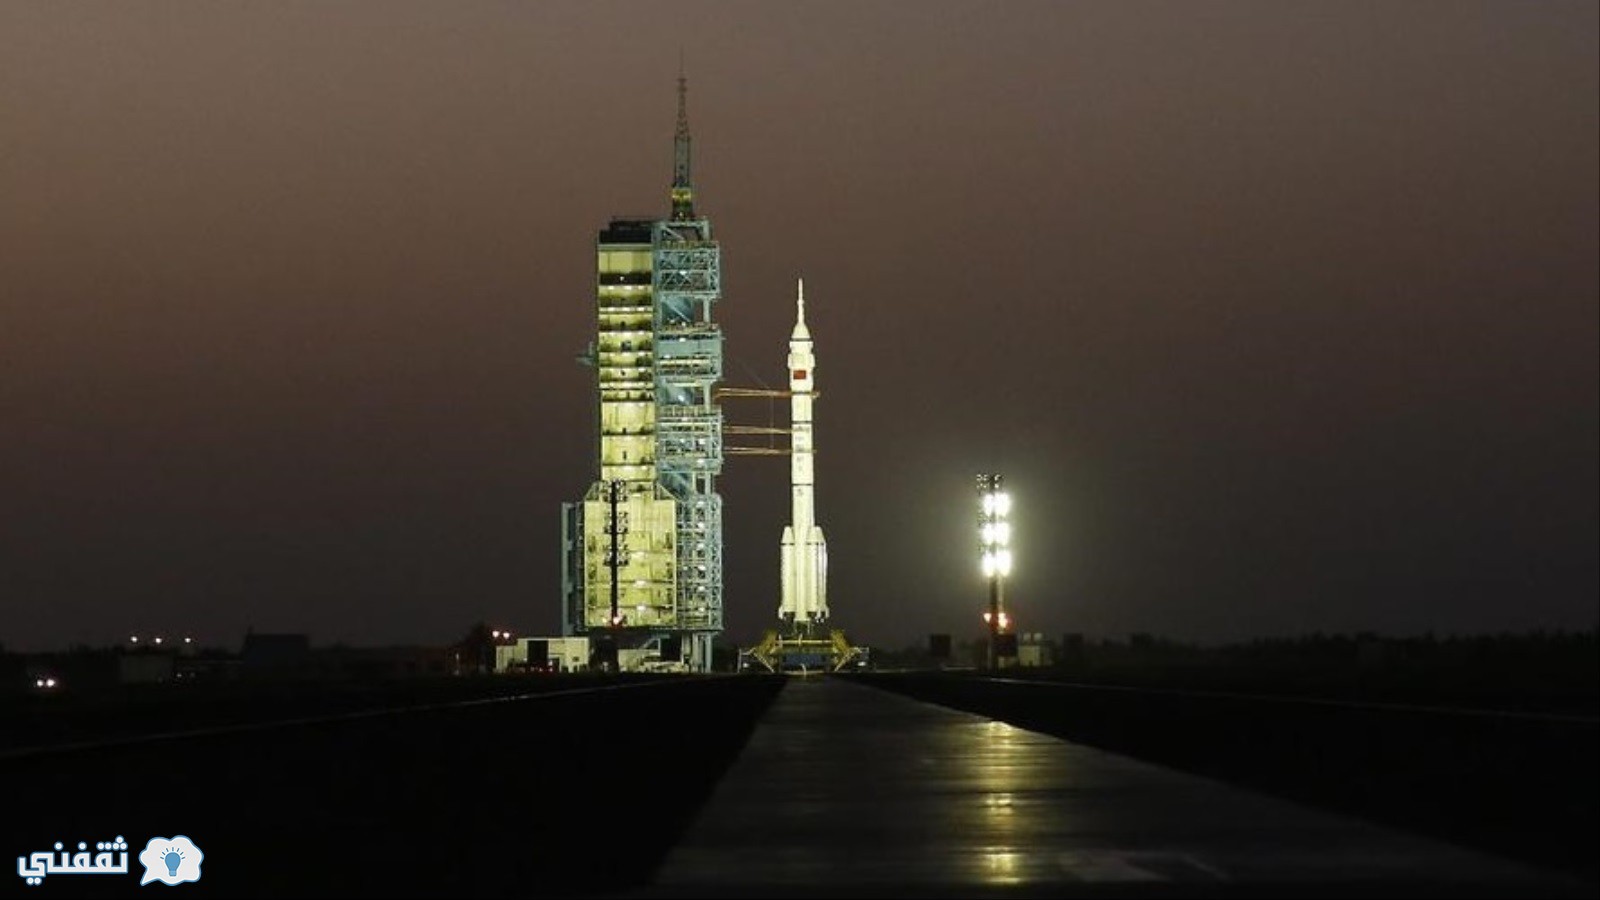 أنجاز صيني في مجال الفضاء – الصين تطلق مركبتها الفضائية المأهولة شنتشو 11 إلى الفضاء